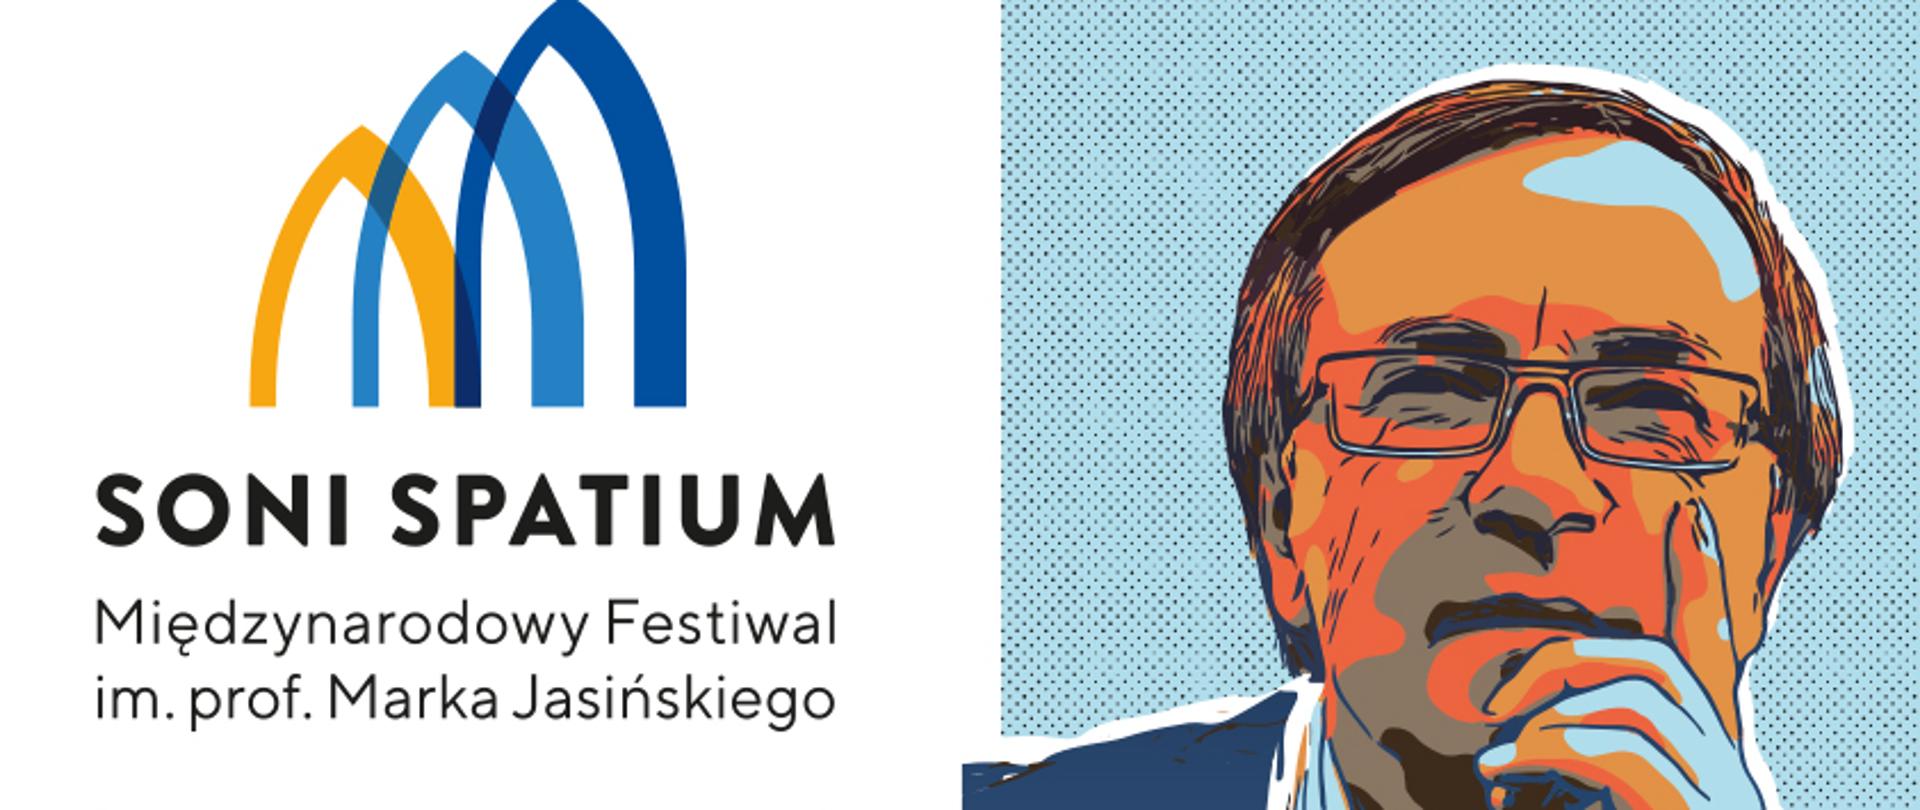 Na białym tle, kolorowa informacja dotycząca SONI SPATIUM Międzynarodowy Festiwal im. prof. Marka Jasińskiego. Plakat przedstawia kolorową postać pro.f Marka Jasińskiego.